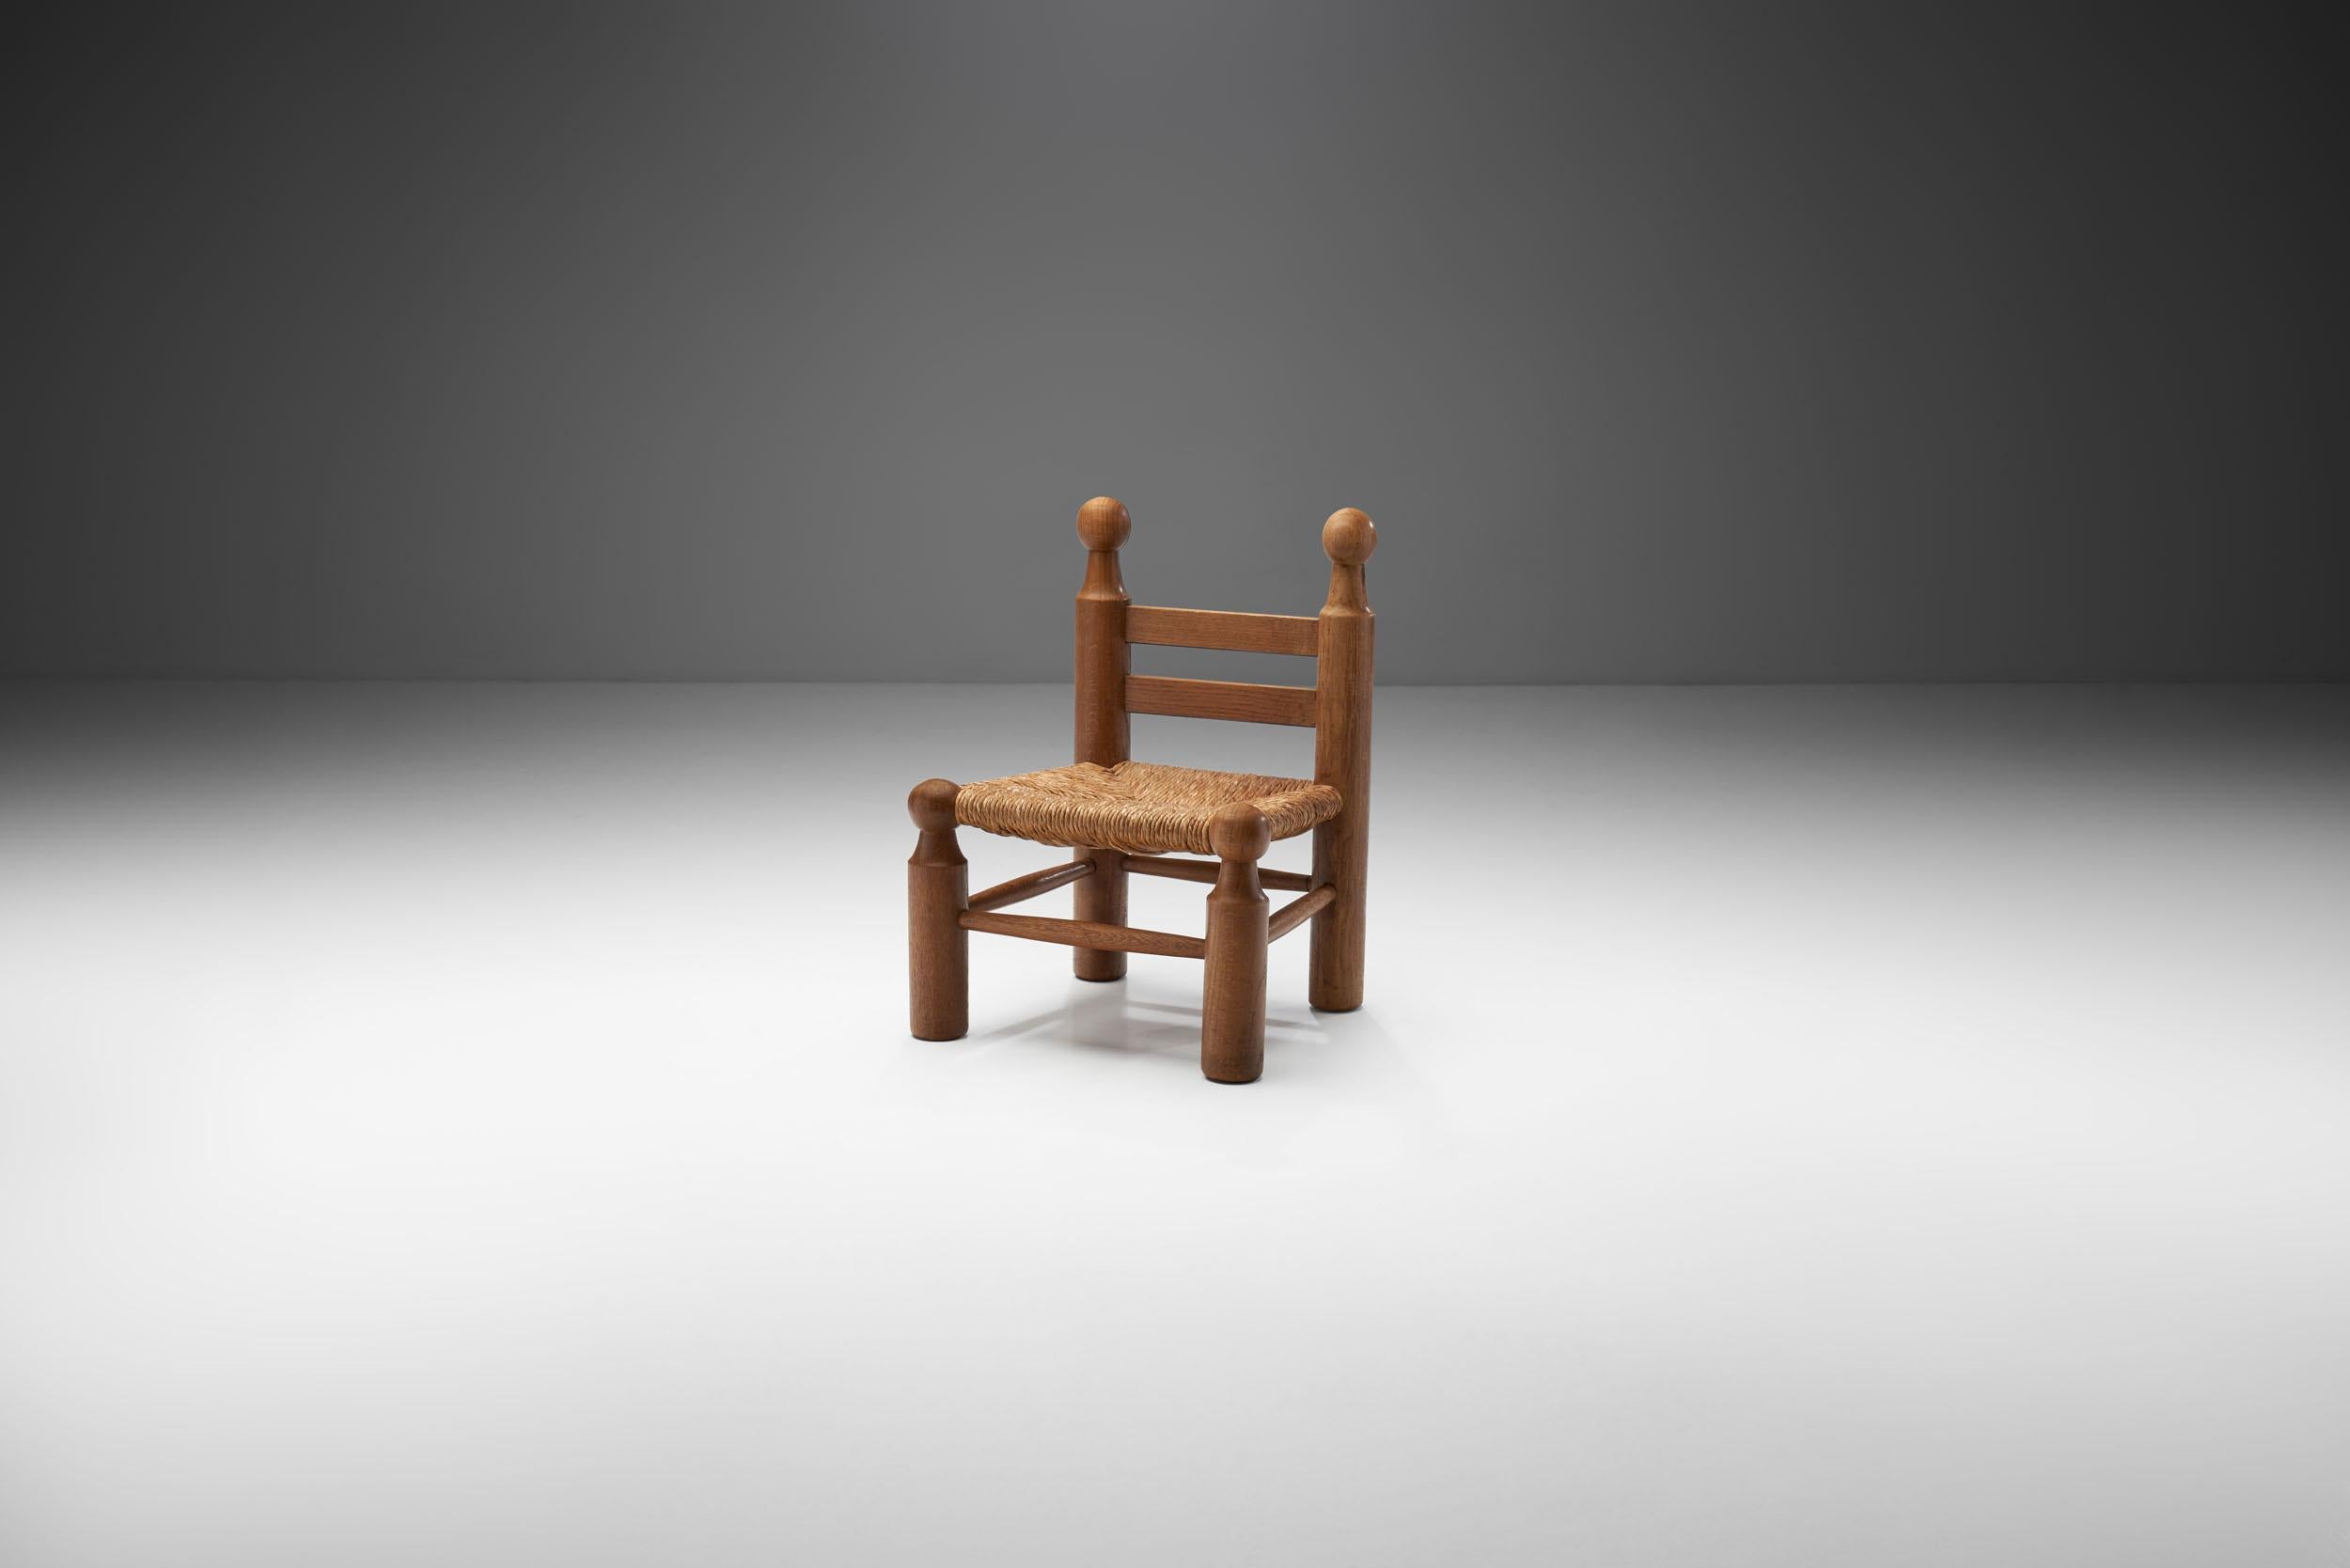 In den vergangenen Jahrzehnten wurden Kleinmöbel für verschiedene Zwecke geschaffen, die im 21. Jahrhundert wieder zu begehrten Stücken geworden sind. Dieser Stuhl aus Massivholz und Korbgeflecht ist ein schönes Exemplar, das offensichtlich von